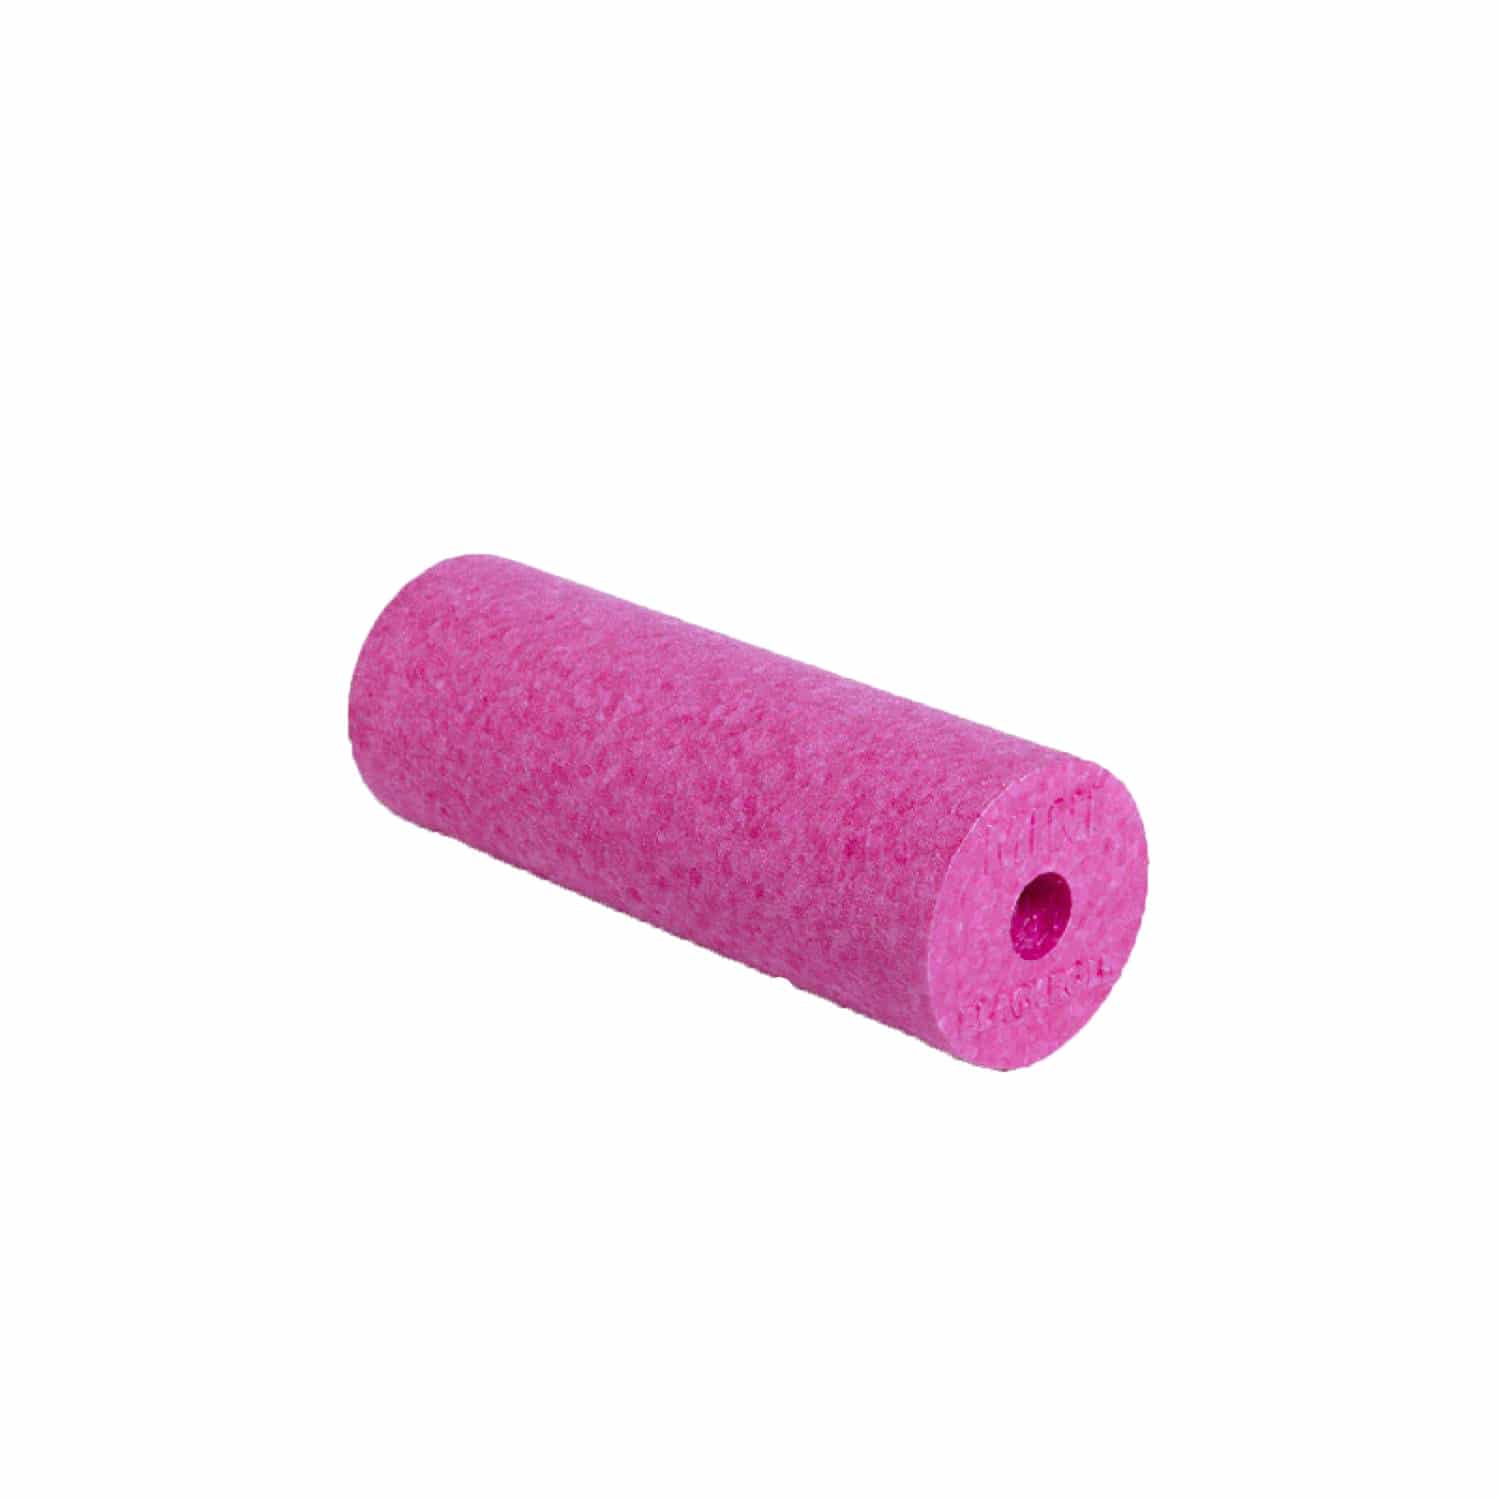 blackroll-mini-pink-0-8-2-1500x1500-0-8-2-1500x1500